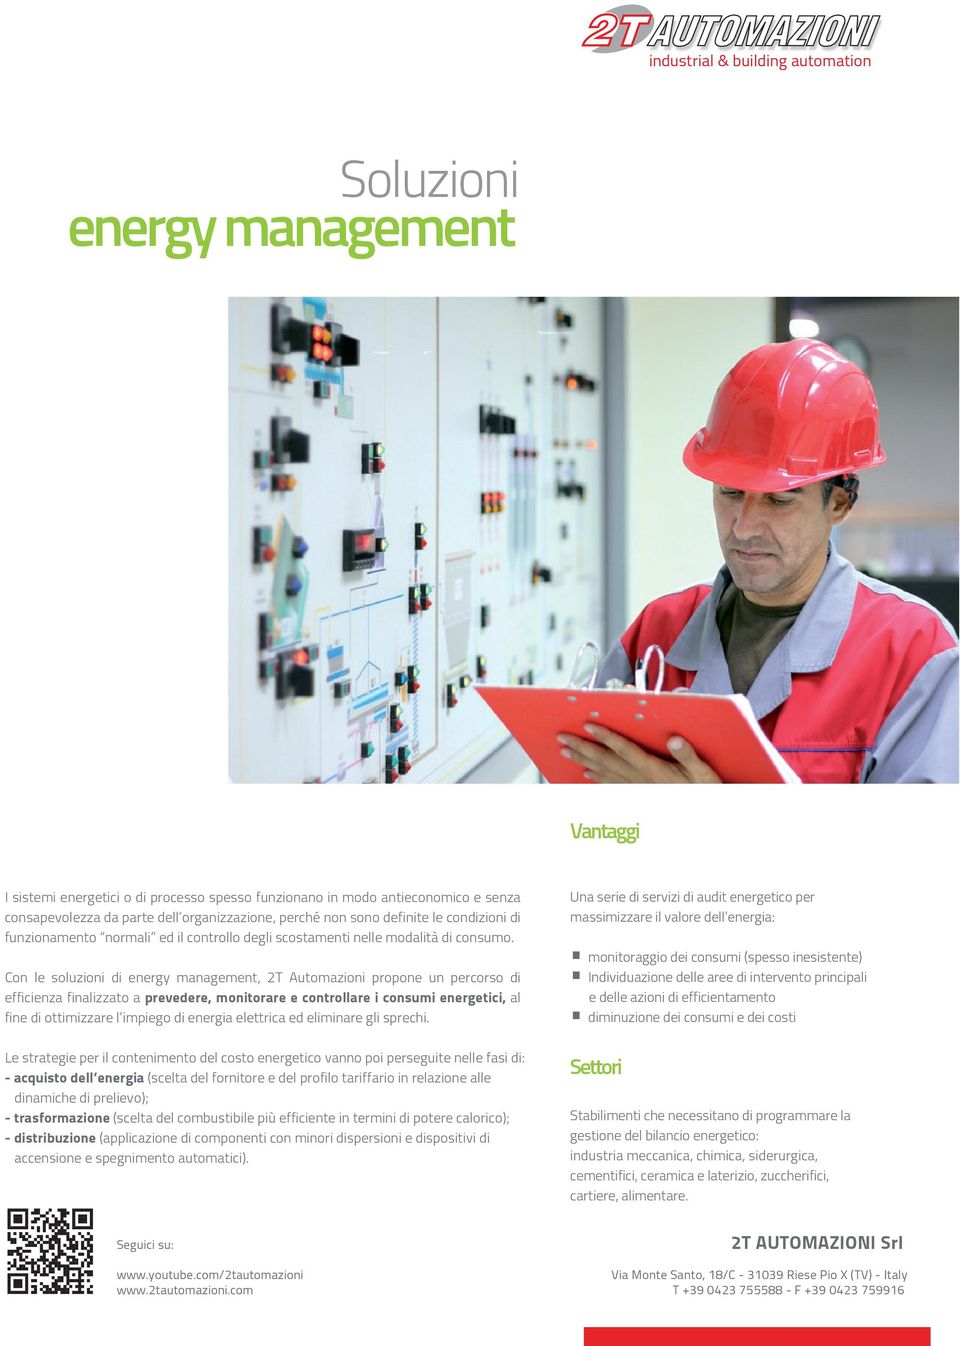 Con le soluzioni di energy management, 2T Automazioni propone un percorso di efficienza finalizzato a prevedere, monitorare e controllare i consumi energetici, al fine di ottimizzare l impiego di